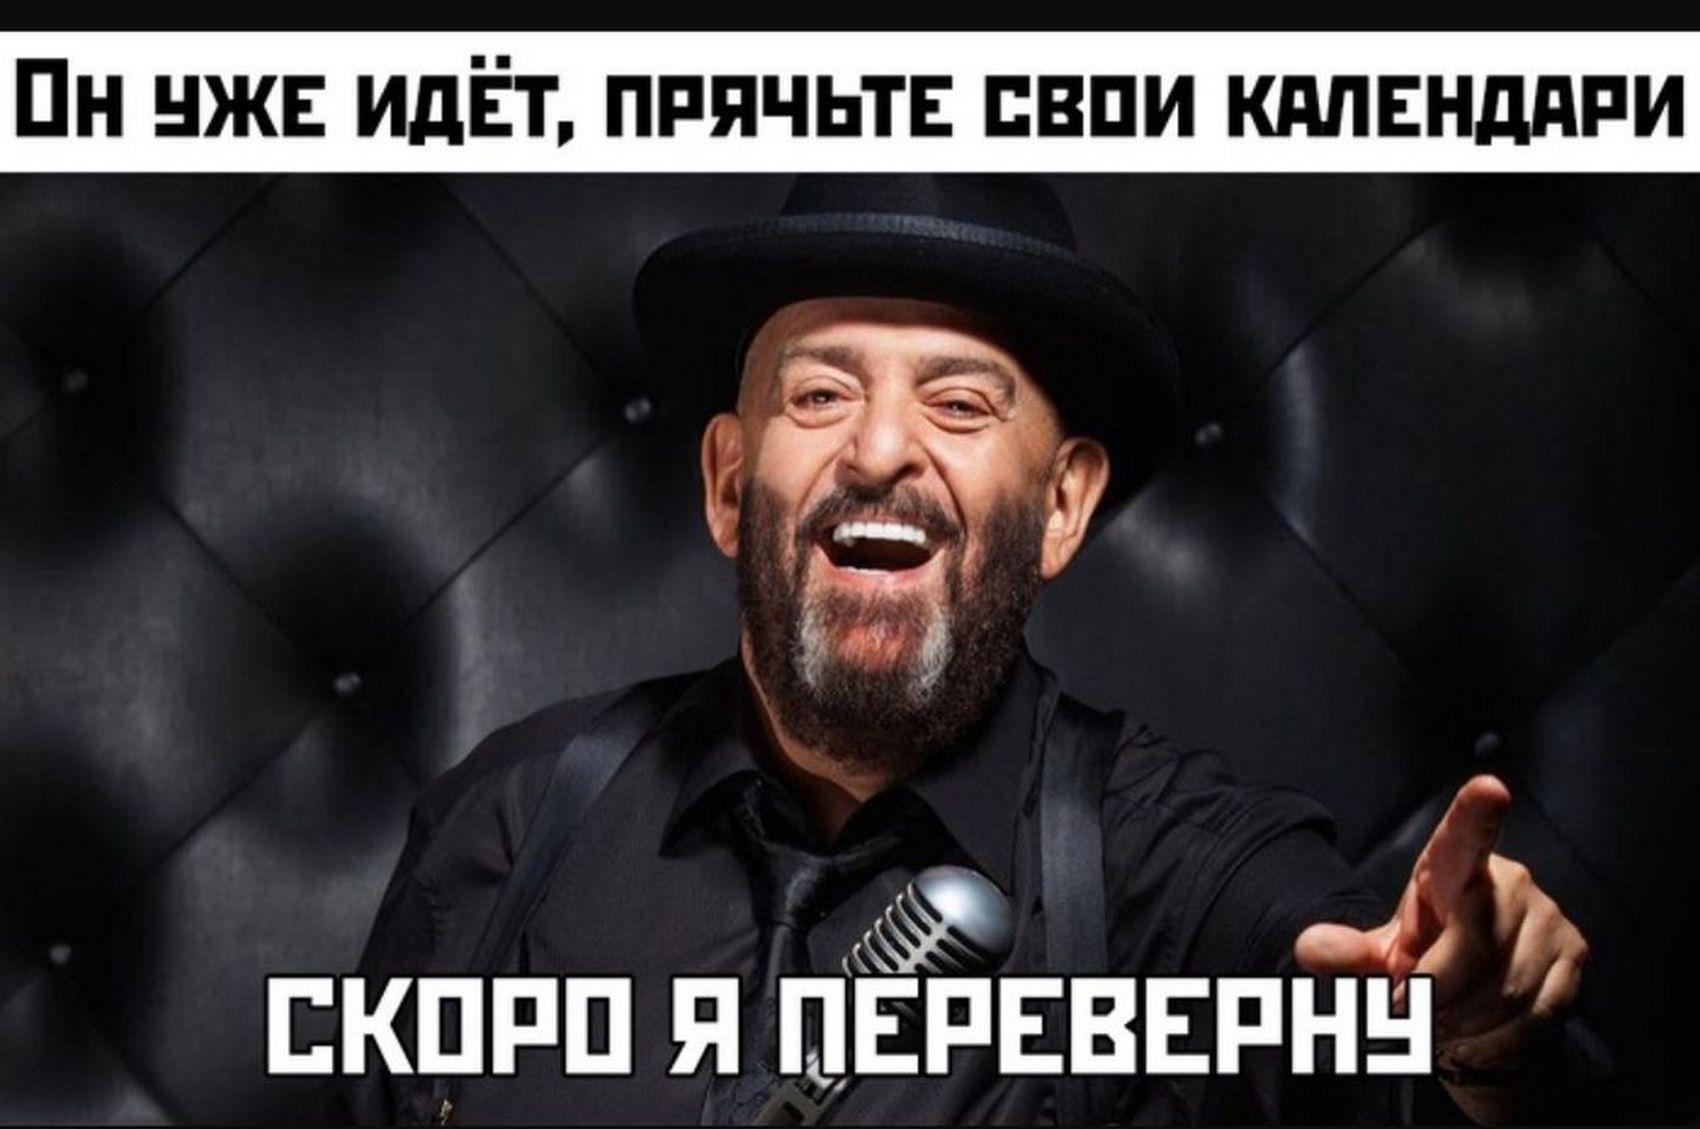 Концерт Шуфутинского покажут на украинском TV 5 сентября, поклонники просят перенести на 3 сентября